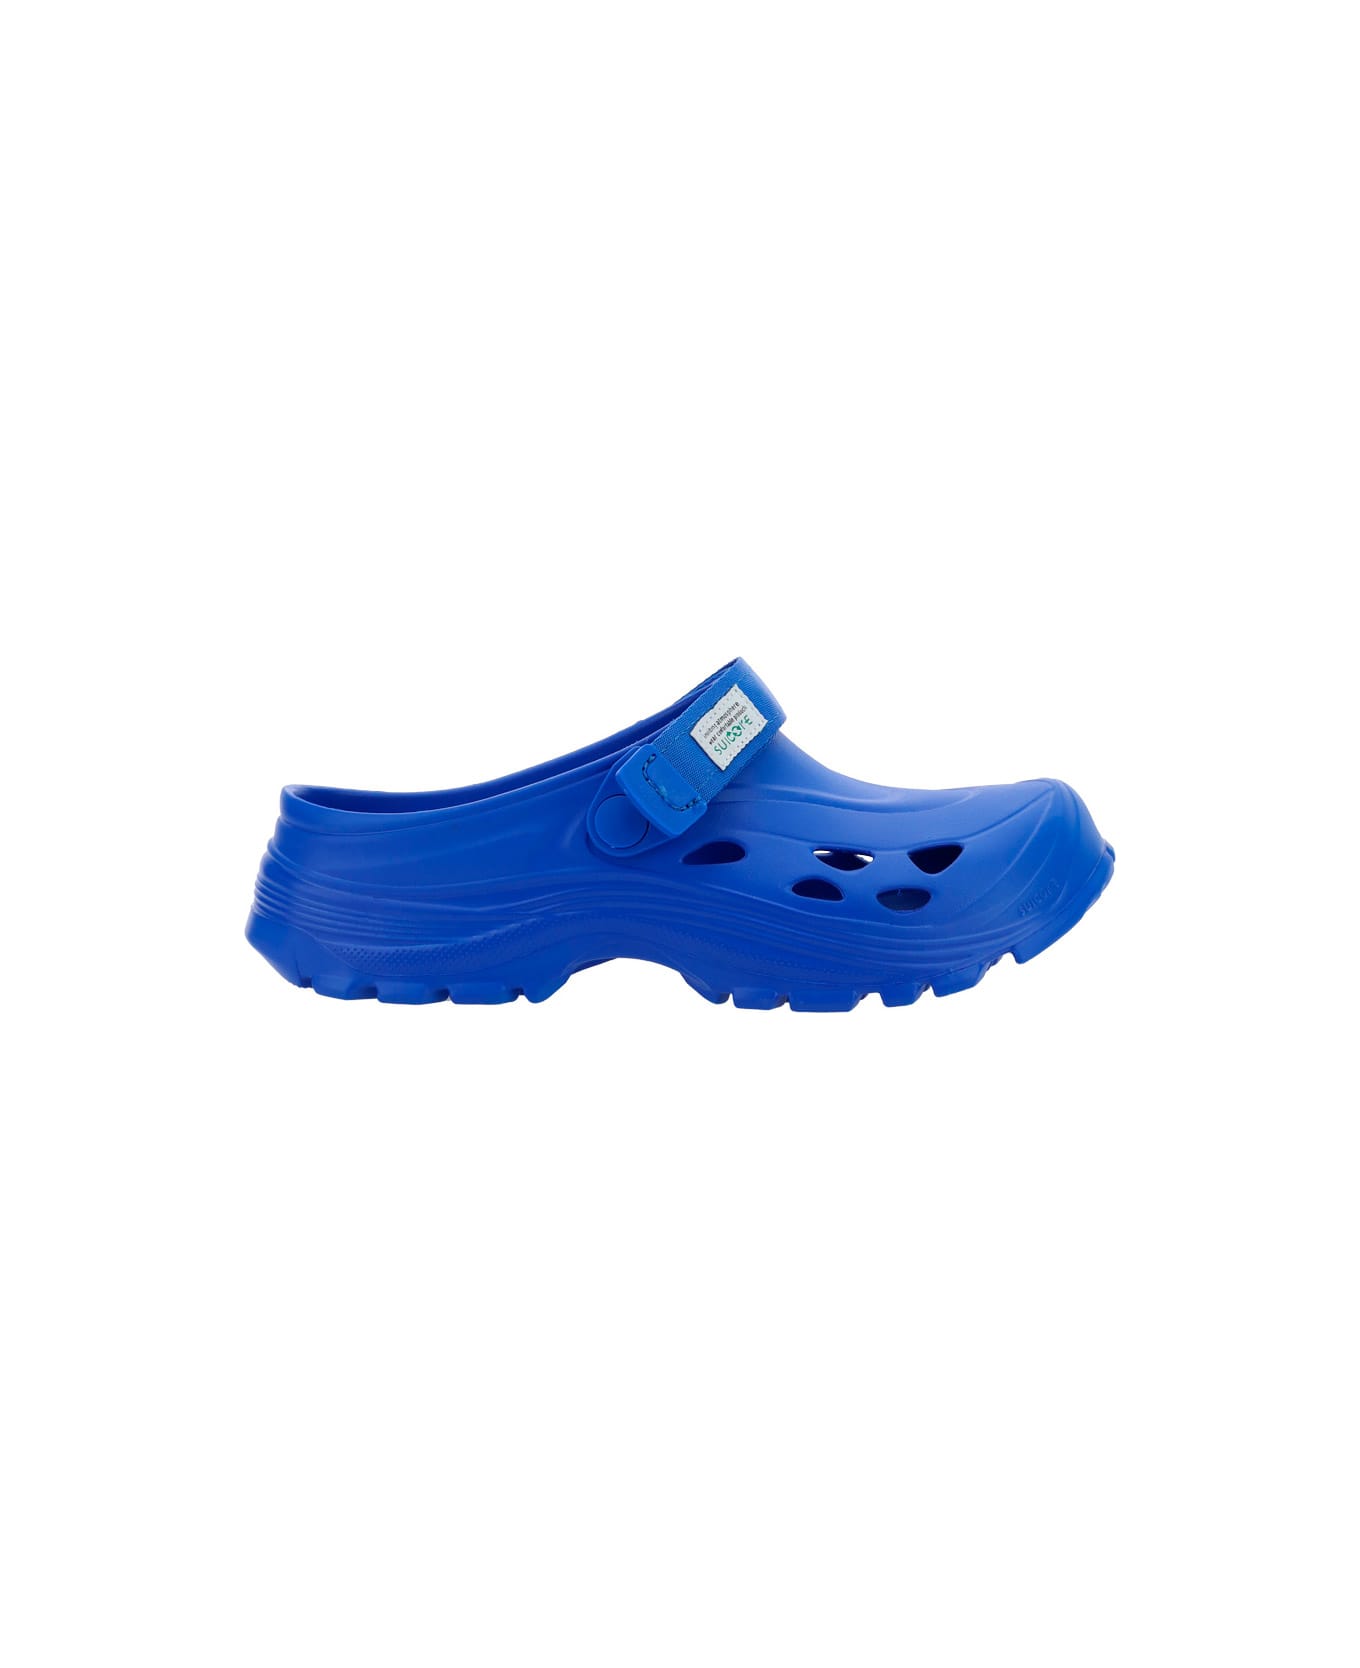 SUICOKE Mok Sandals - Blue